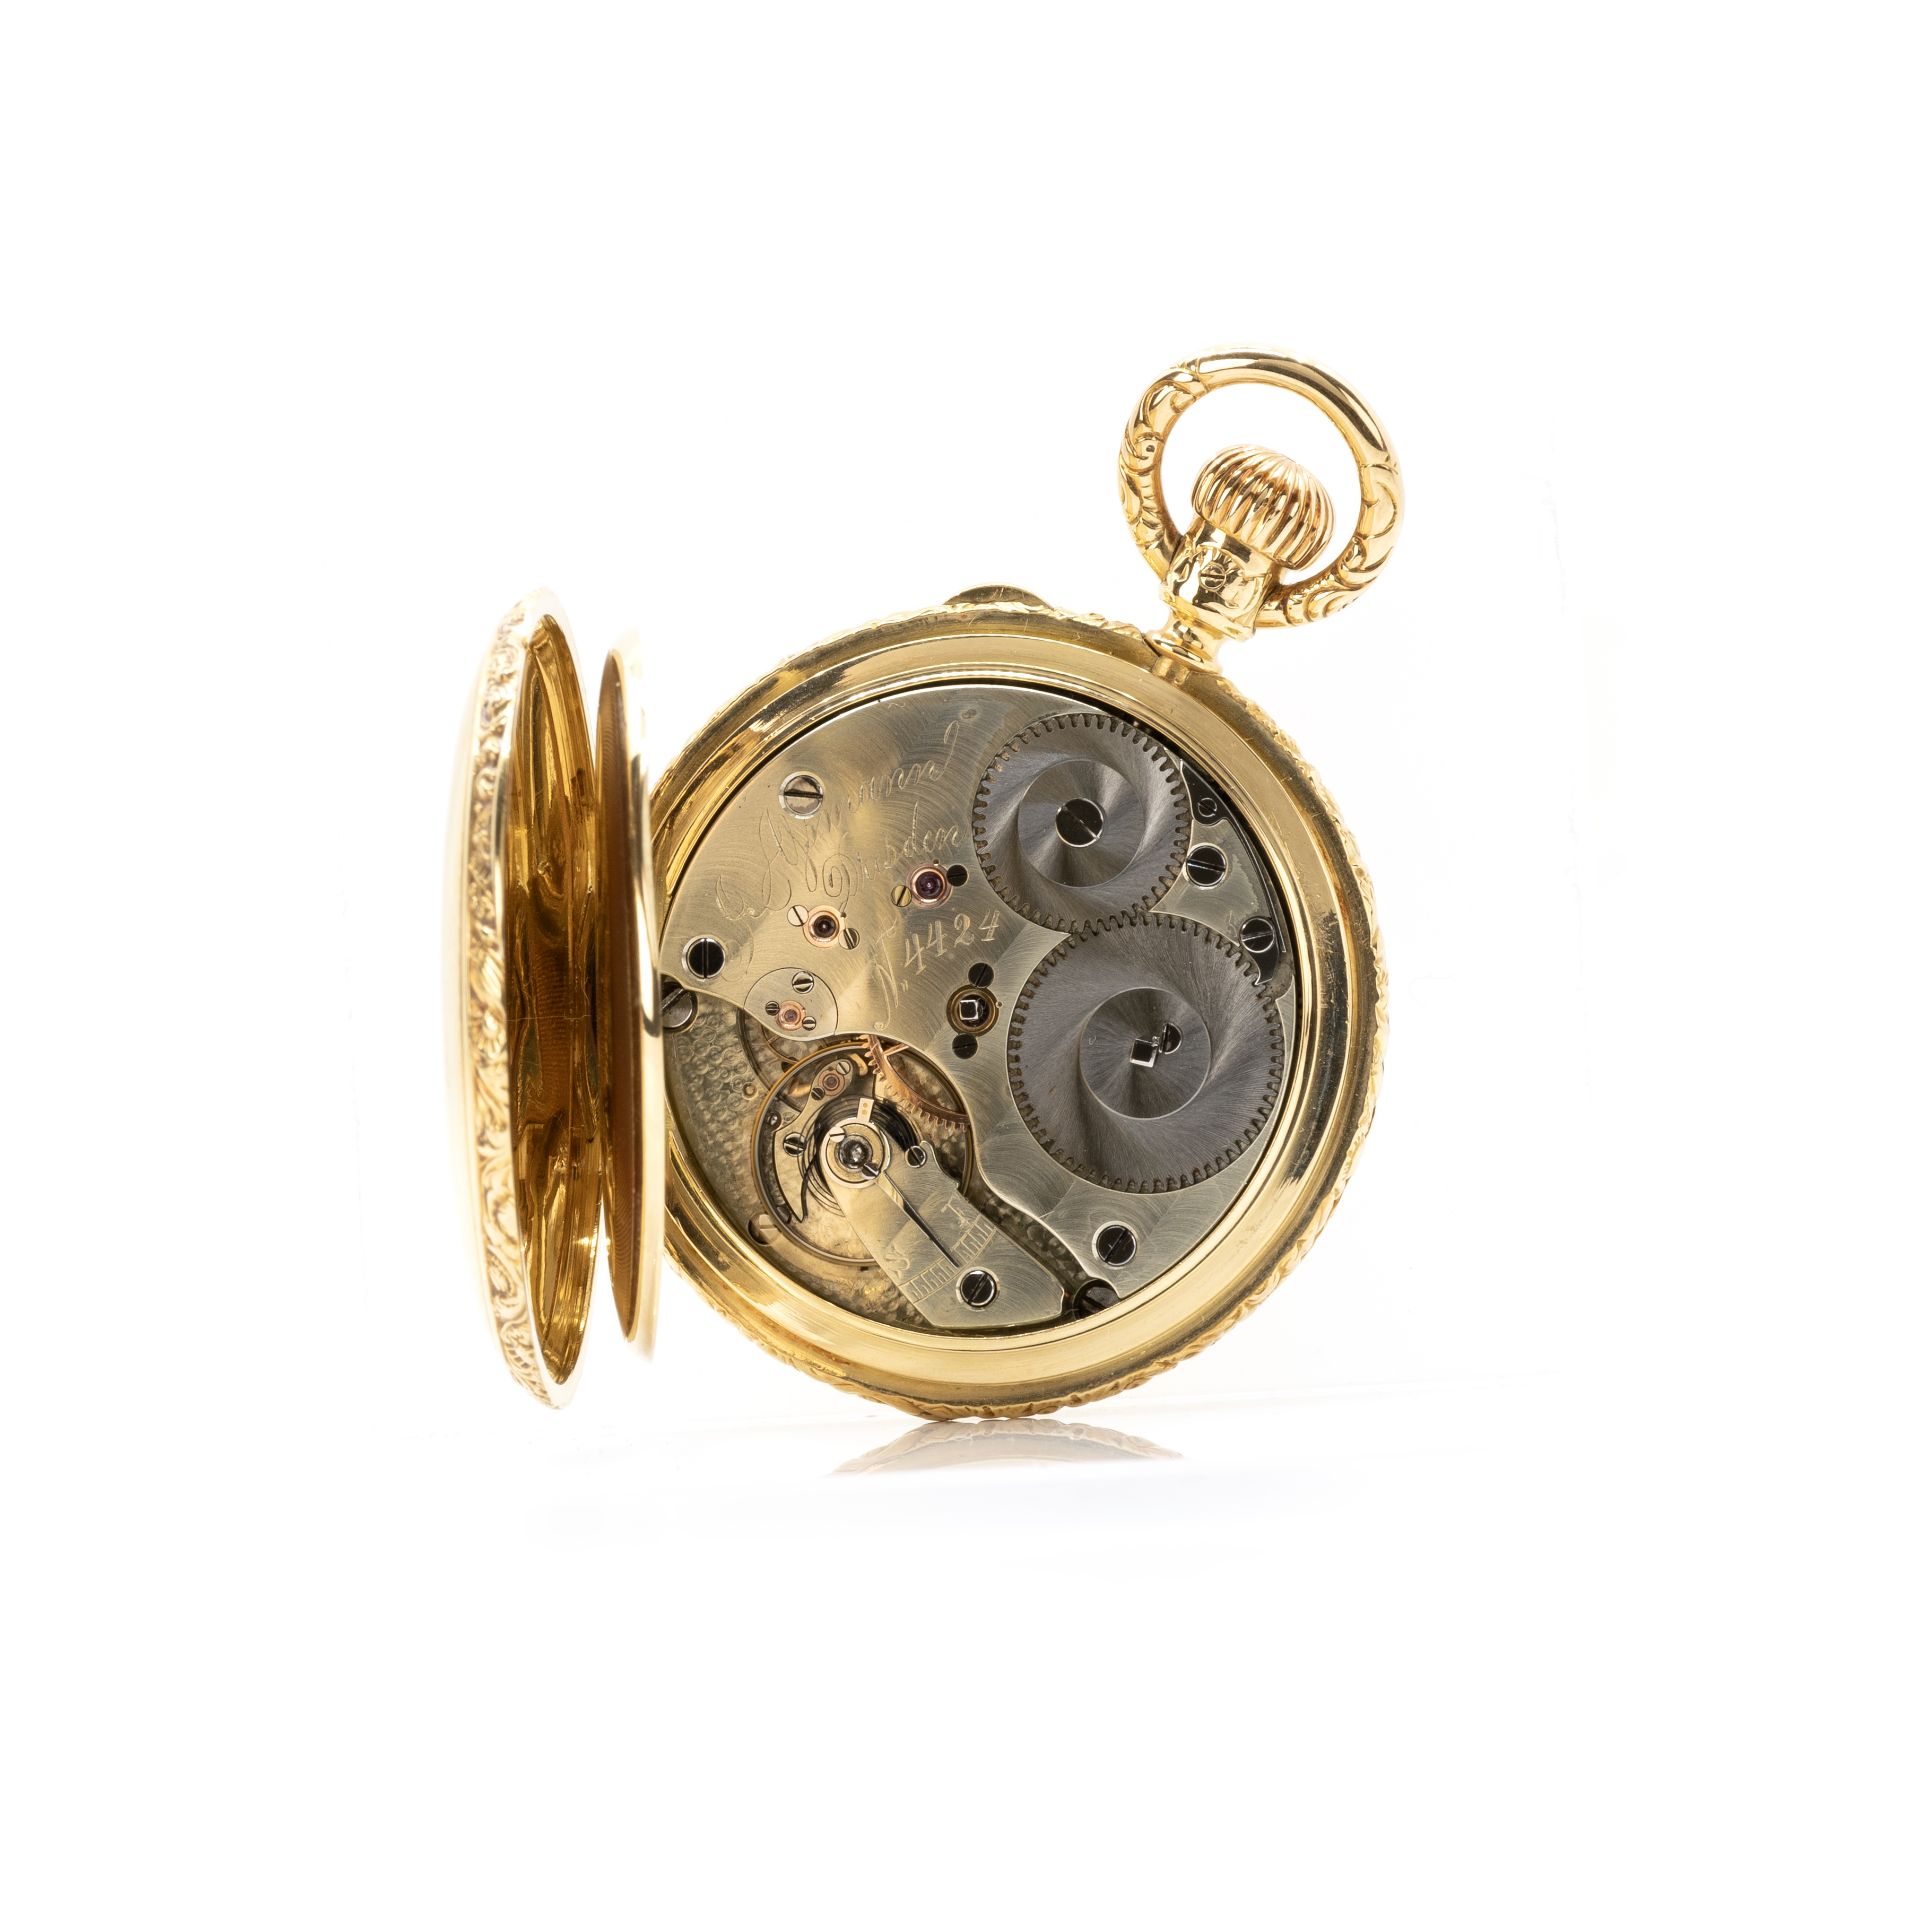 Julius Assmann Glashütte Savonette im Prunkgehäuse mit Uhrenkette - Image 4 of 8